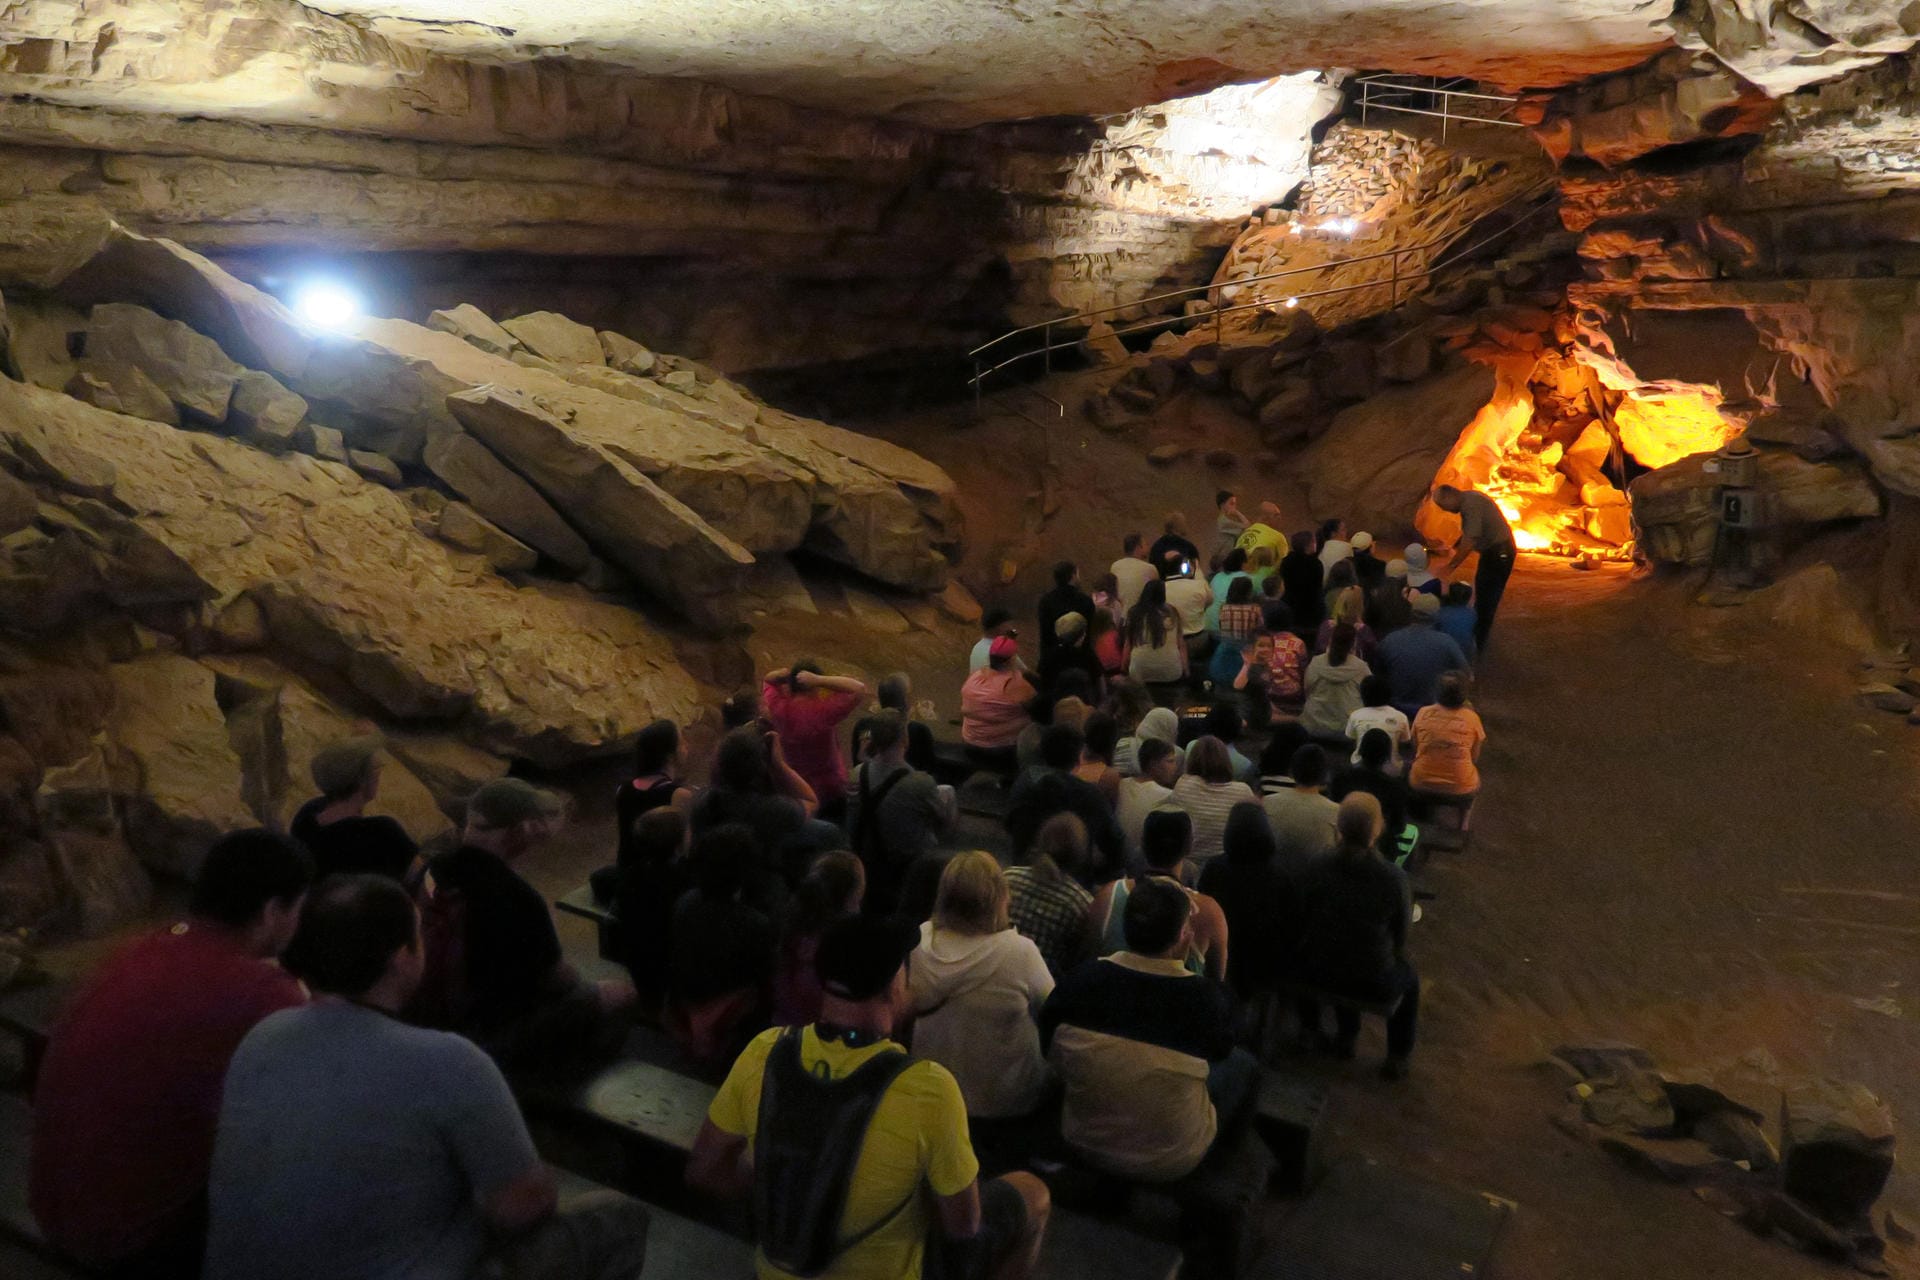 Zum Programm der Tour "Domes & Dripstones" im Mammoth Cave Nationalpark zählt, dass der Ranger kurz das Licht ausschaltet. Sicherheitshalber sitzen alle Teilnehmer dabei auf Bänken.